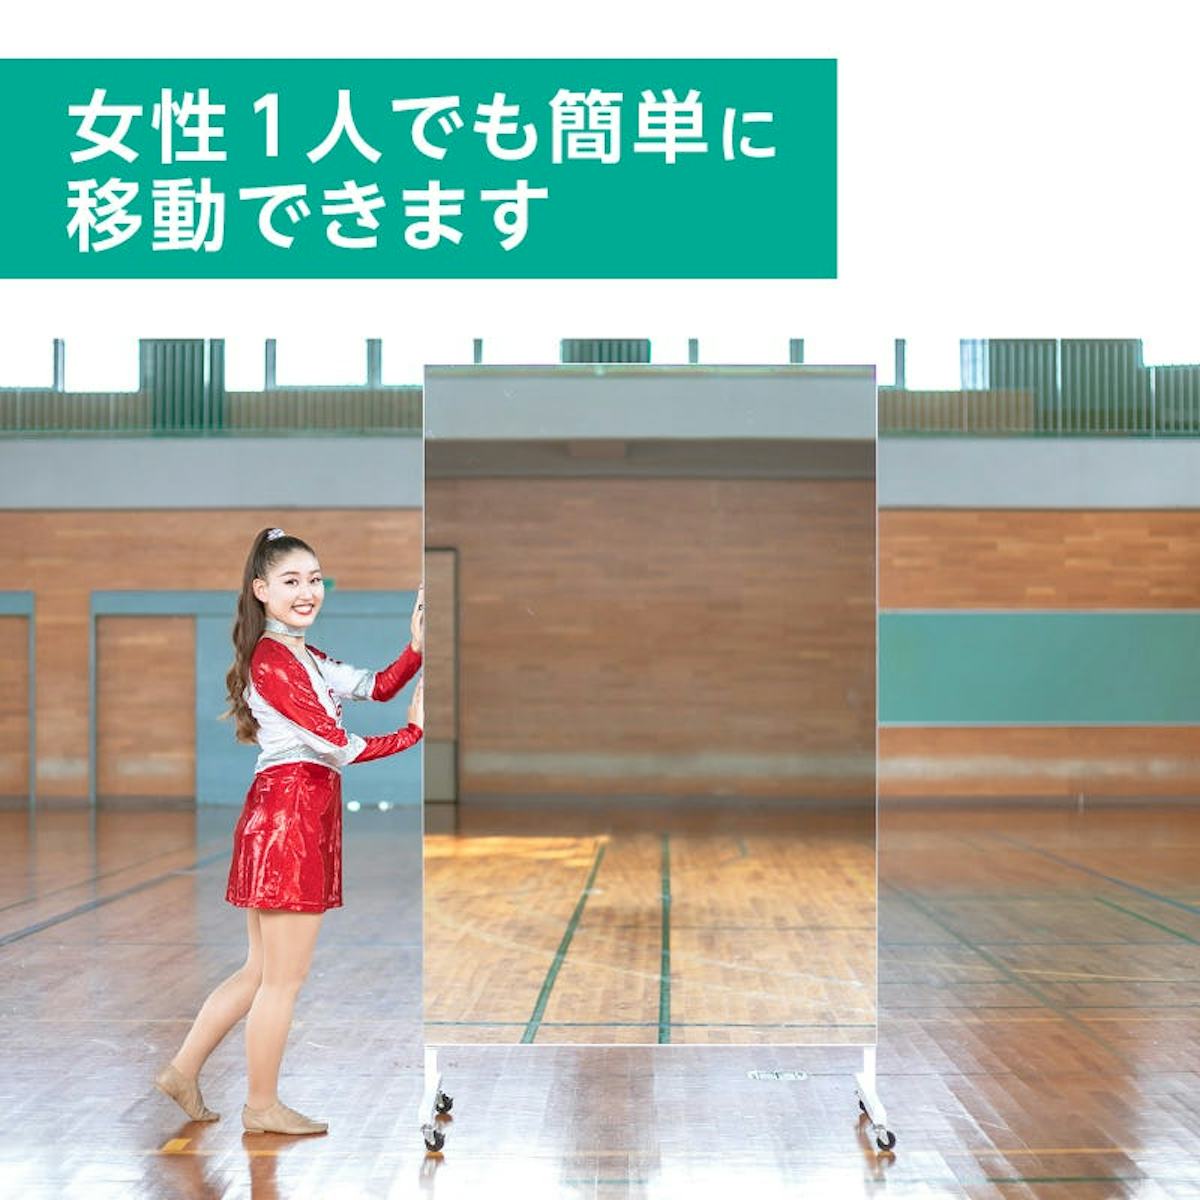 学校・ダンス部用のミラー - 移動式スポーツミラーは女性一人でも簡単に移動できる